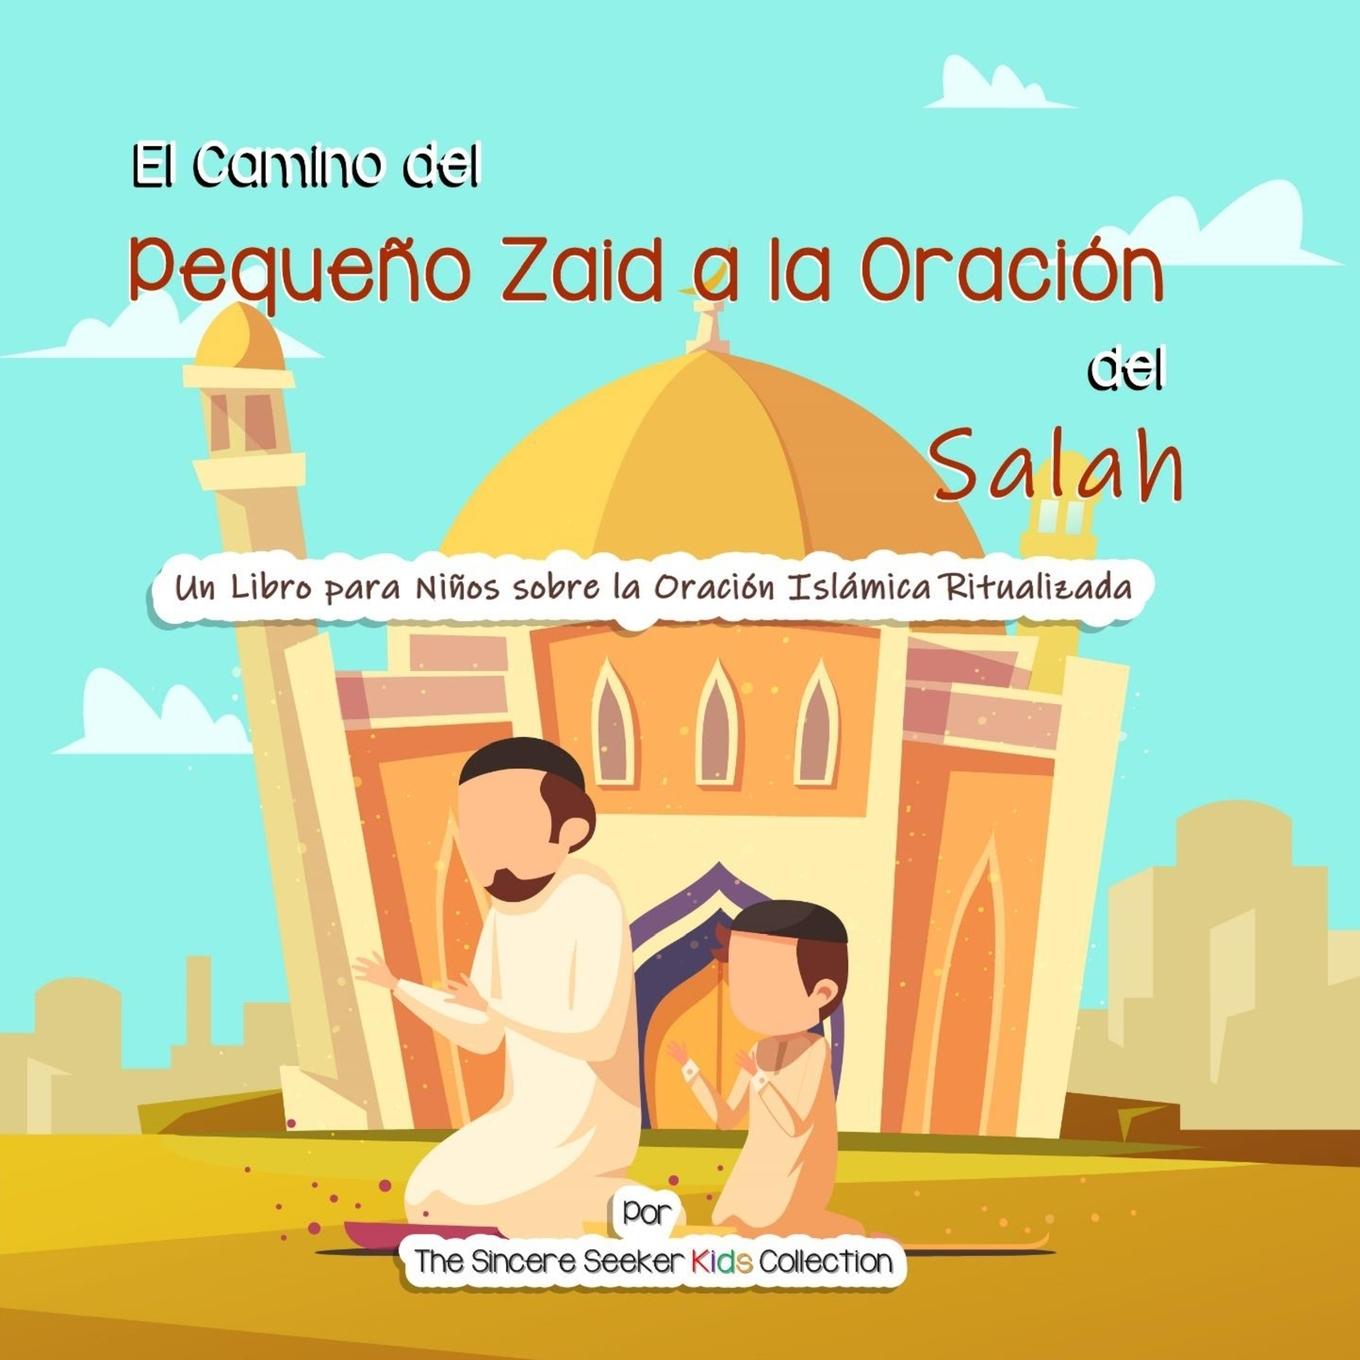 Carte Camino del Pequeno Zaid a la Oracion del Salah 